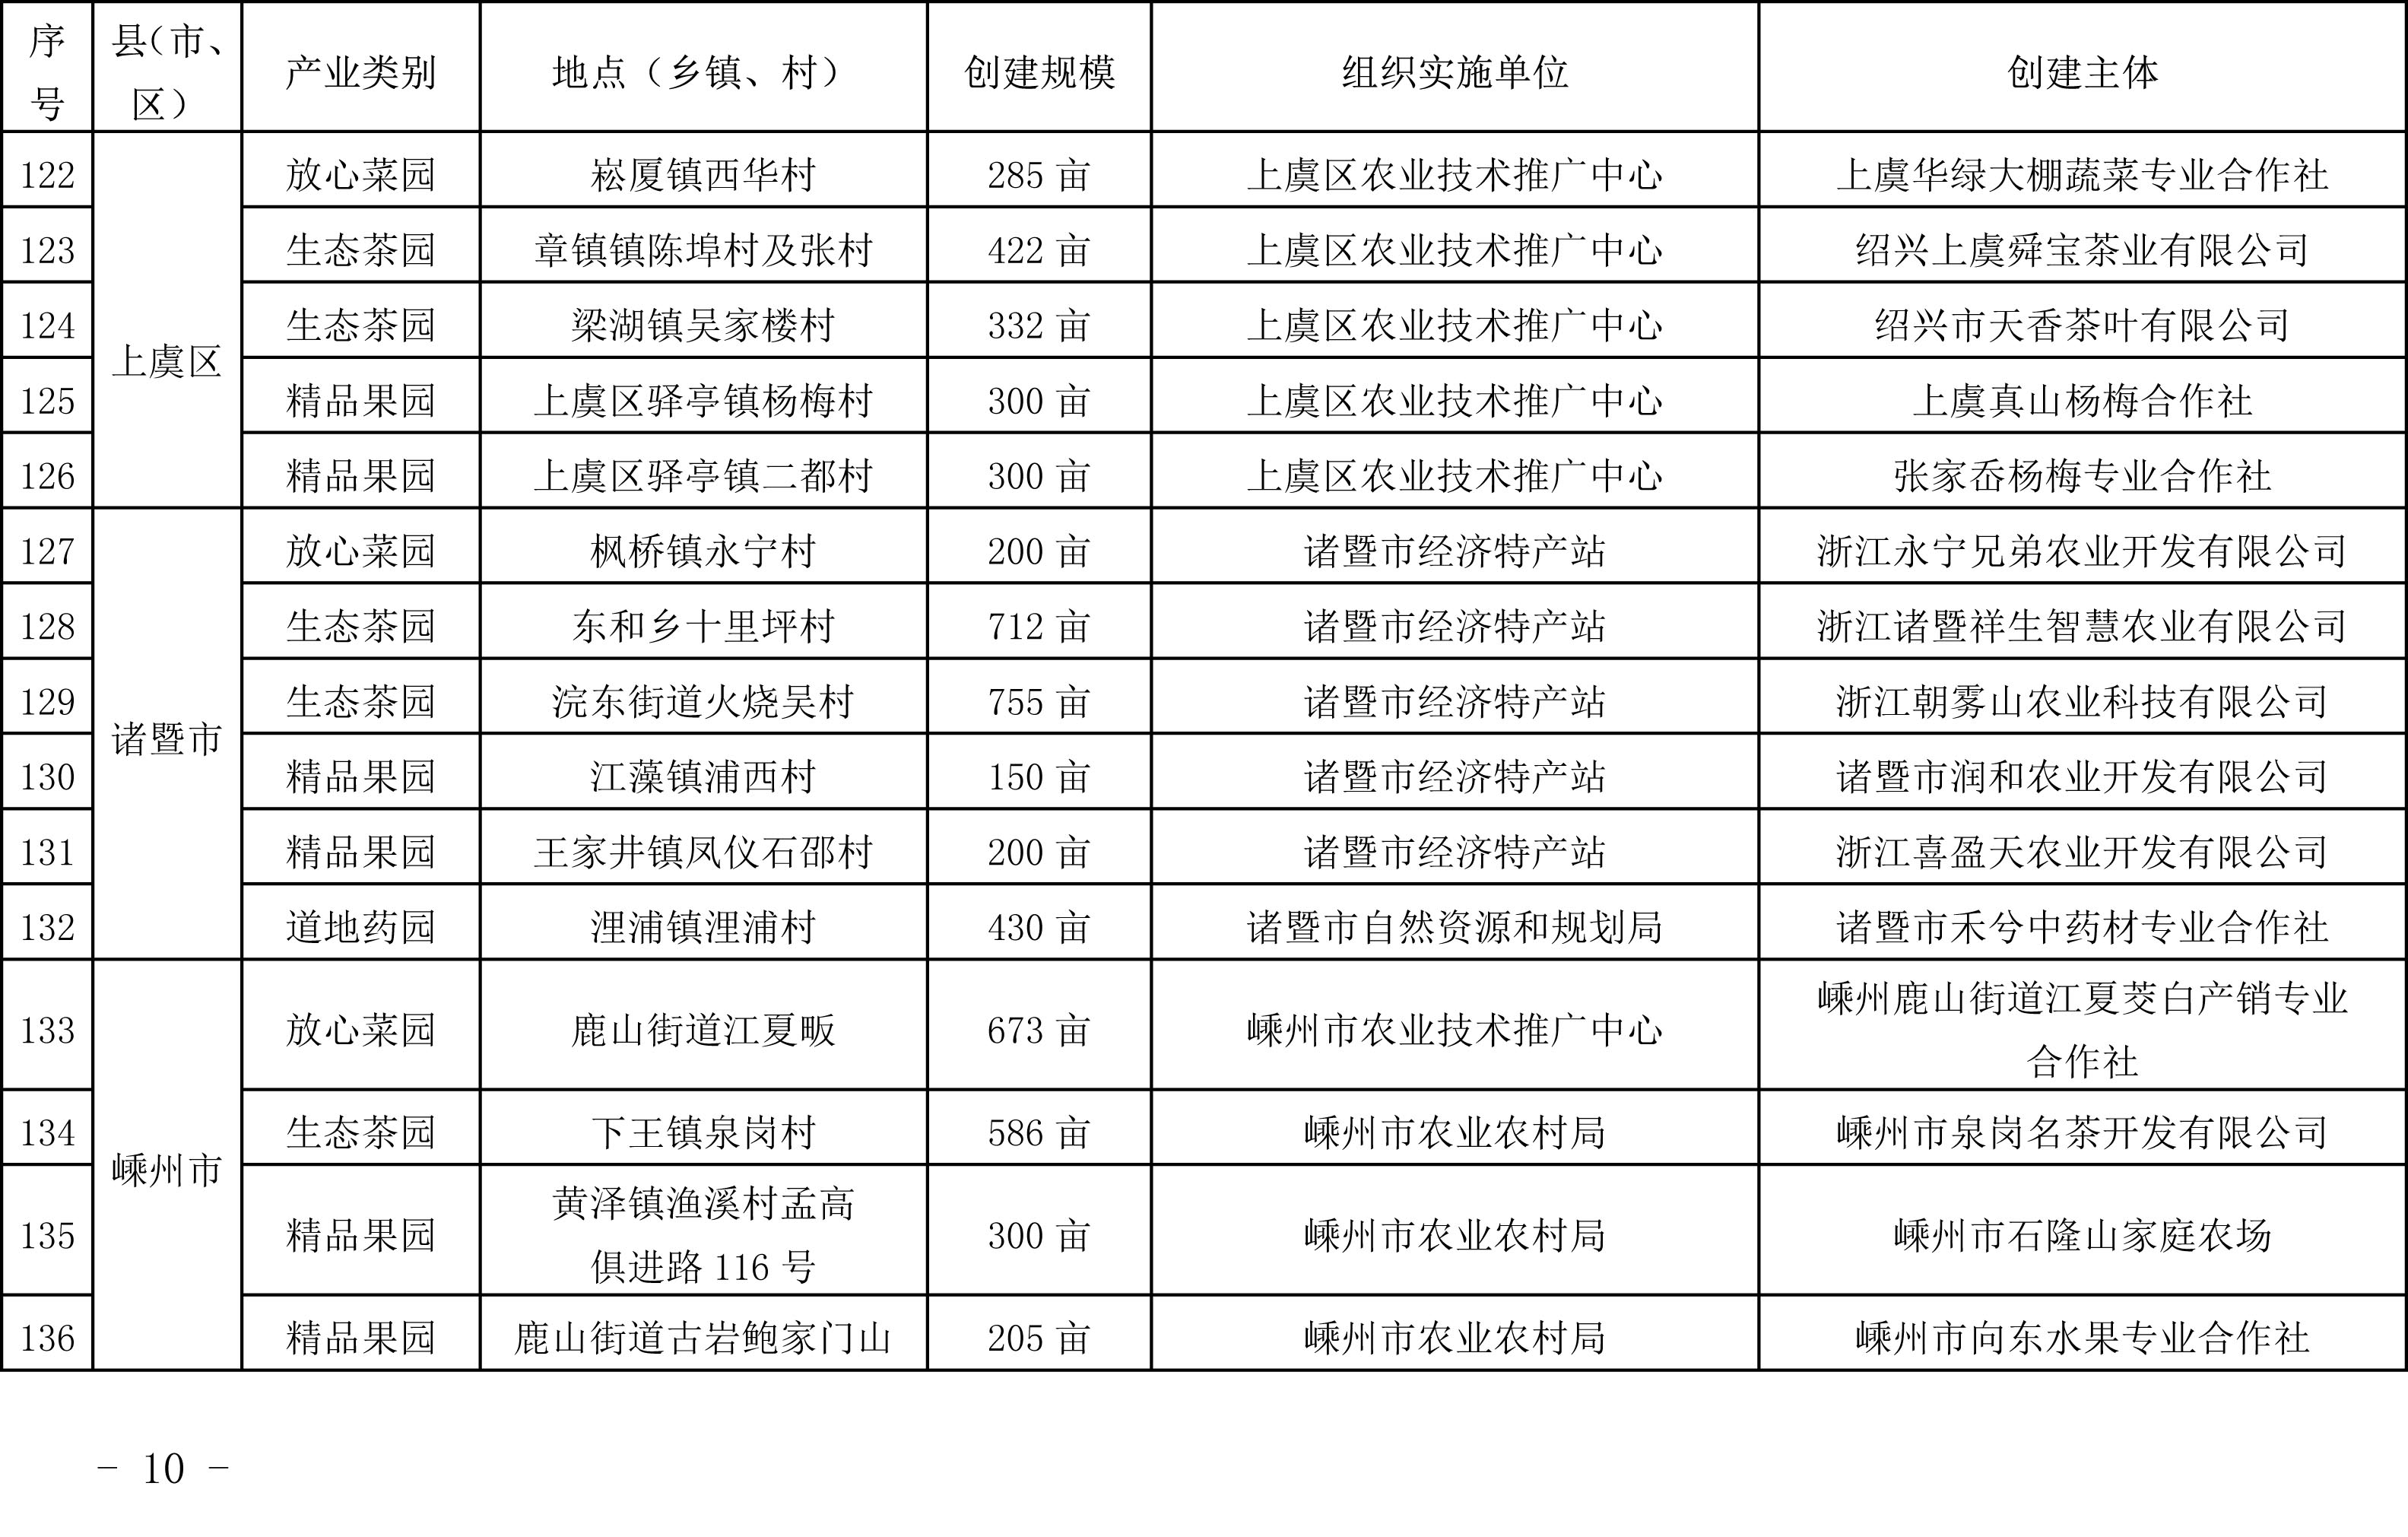 浙江省农业农村厅关于公布2019年度种植业“五园”创建省级示范基地名单的通知(图11)